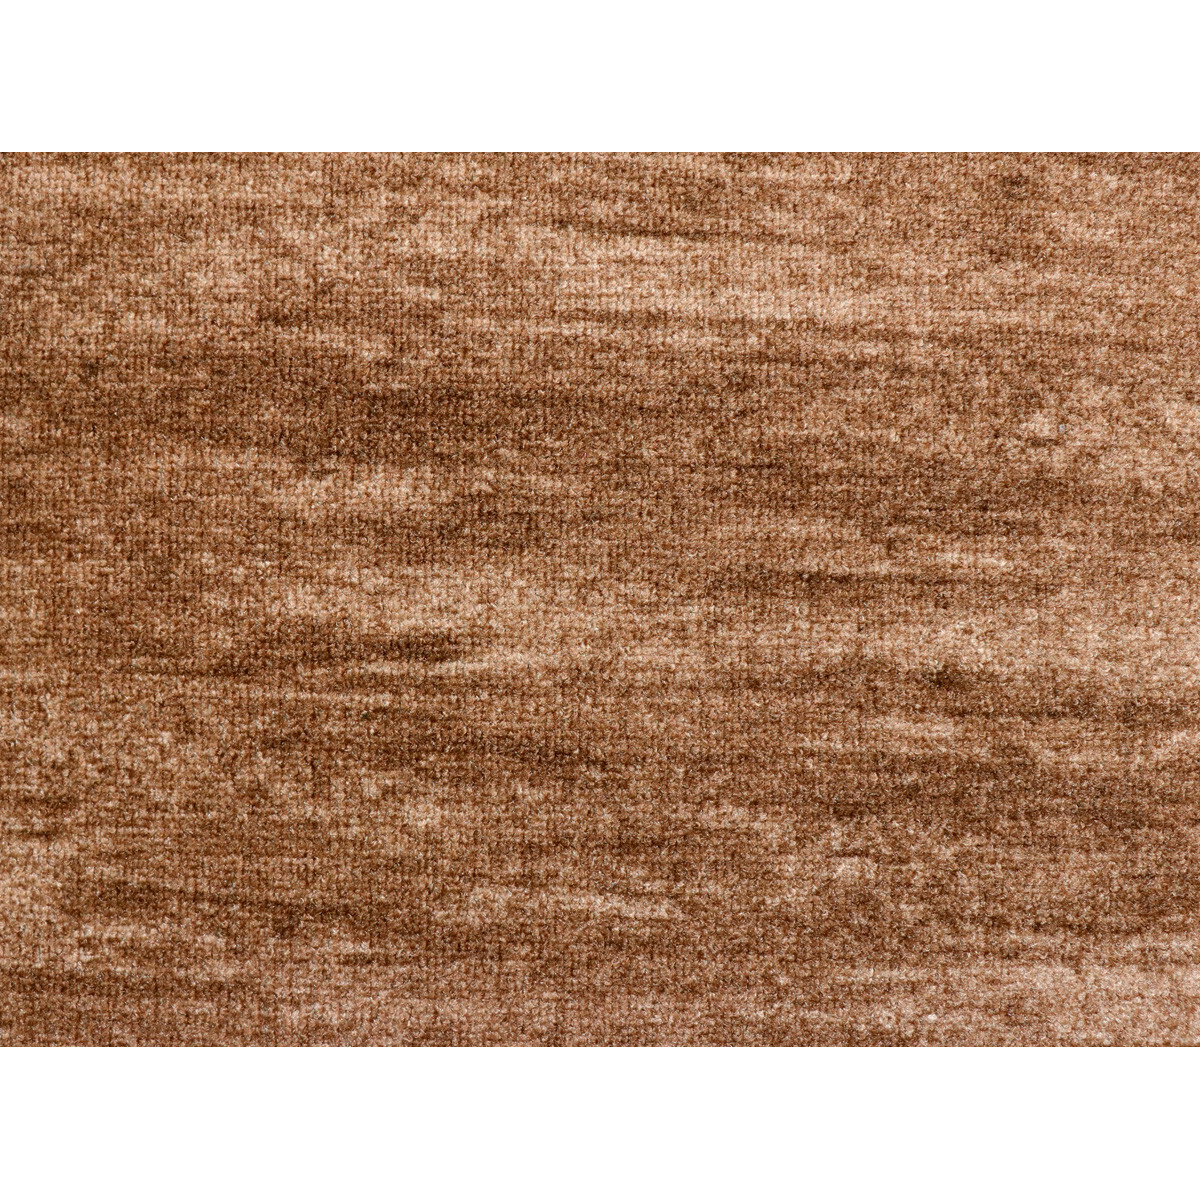 AKCE: 100x250 cm  Metrážový koberec Tropical 40